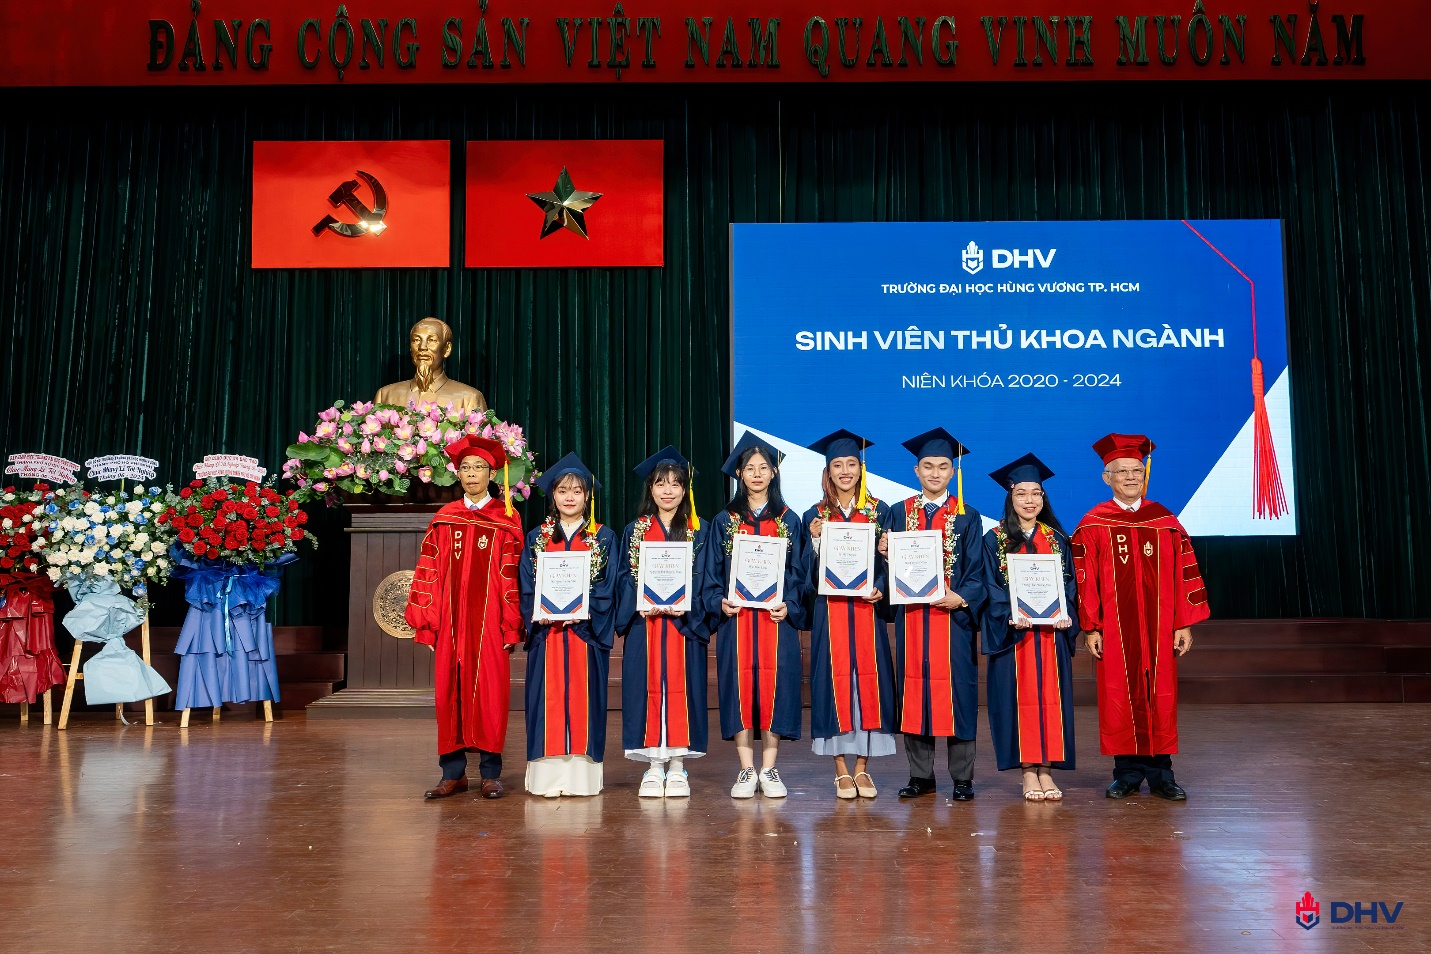 Nụ cười rạng rỡ, nước mắt tự hào: Bức tranh đa sắc tại Lễ Tốt nghiệp Trường ĐH Hùng Vương TP.HCM - Ảnh 2.